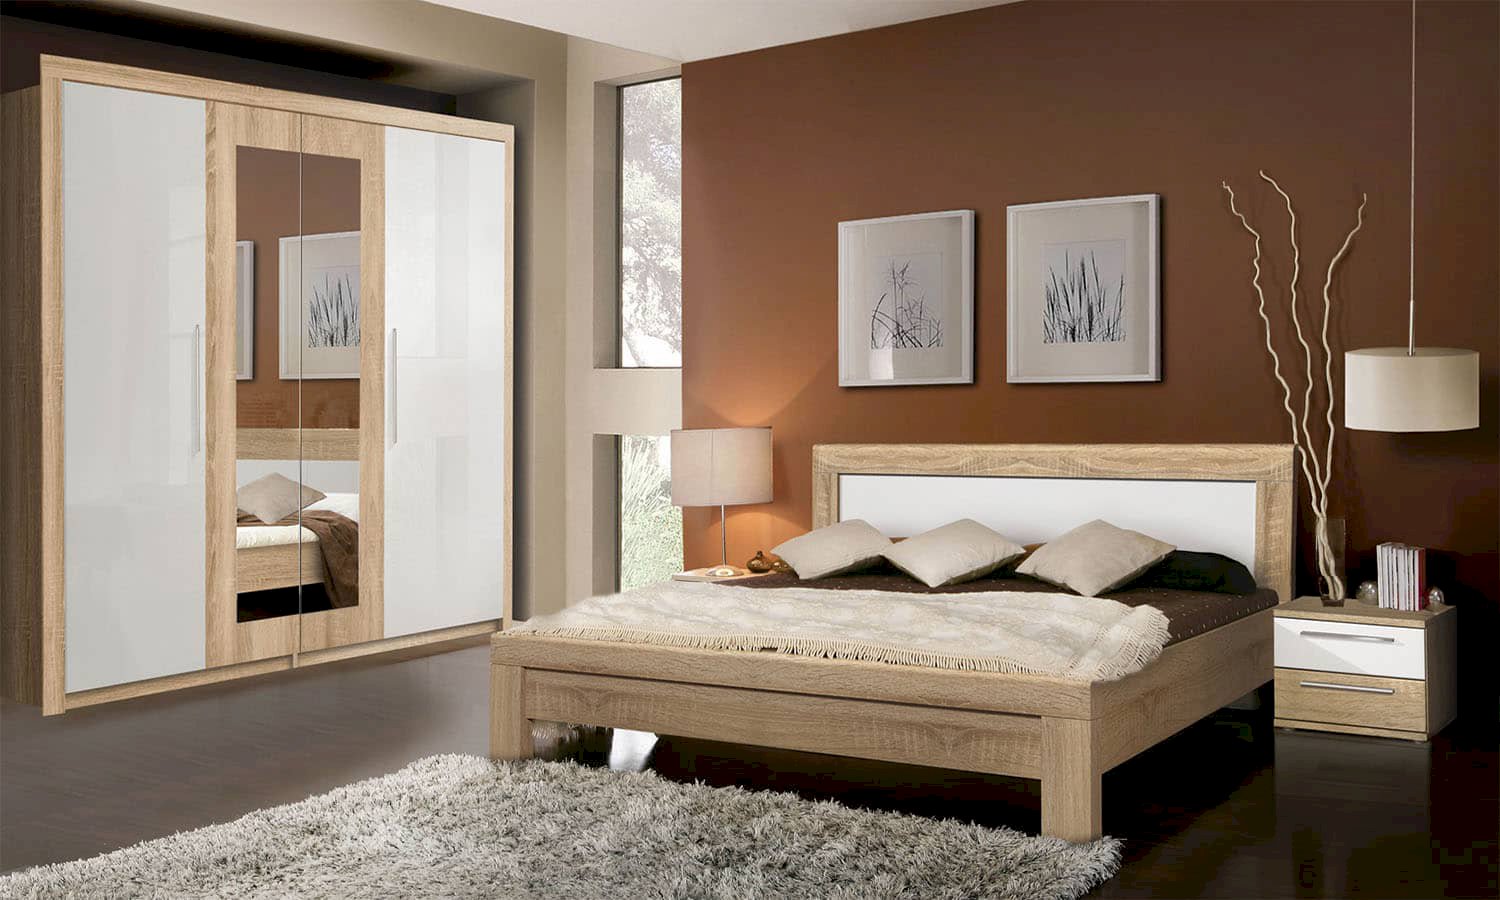 Sypialnia dąb Sonoma: jaki kolor ścian będzie najlepszy?